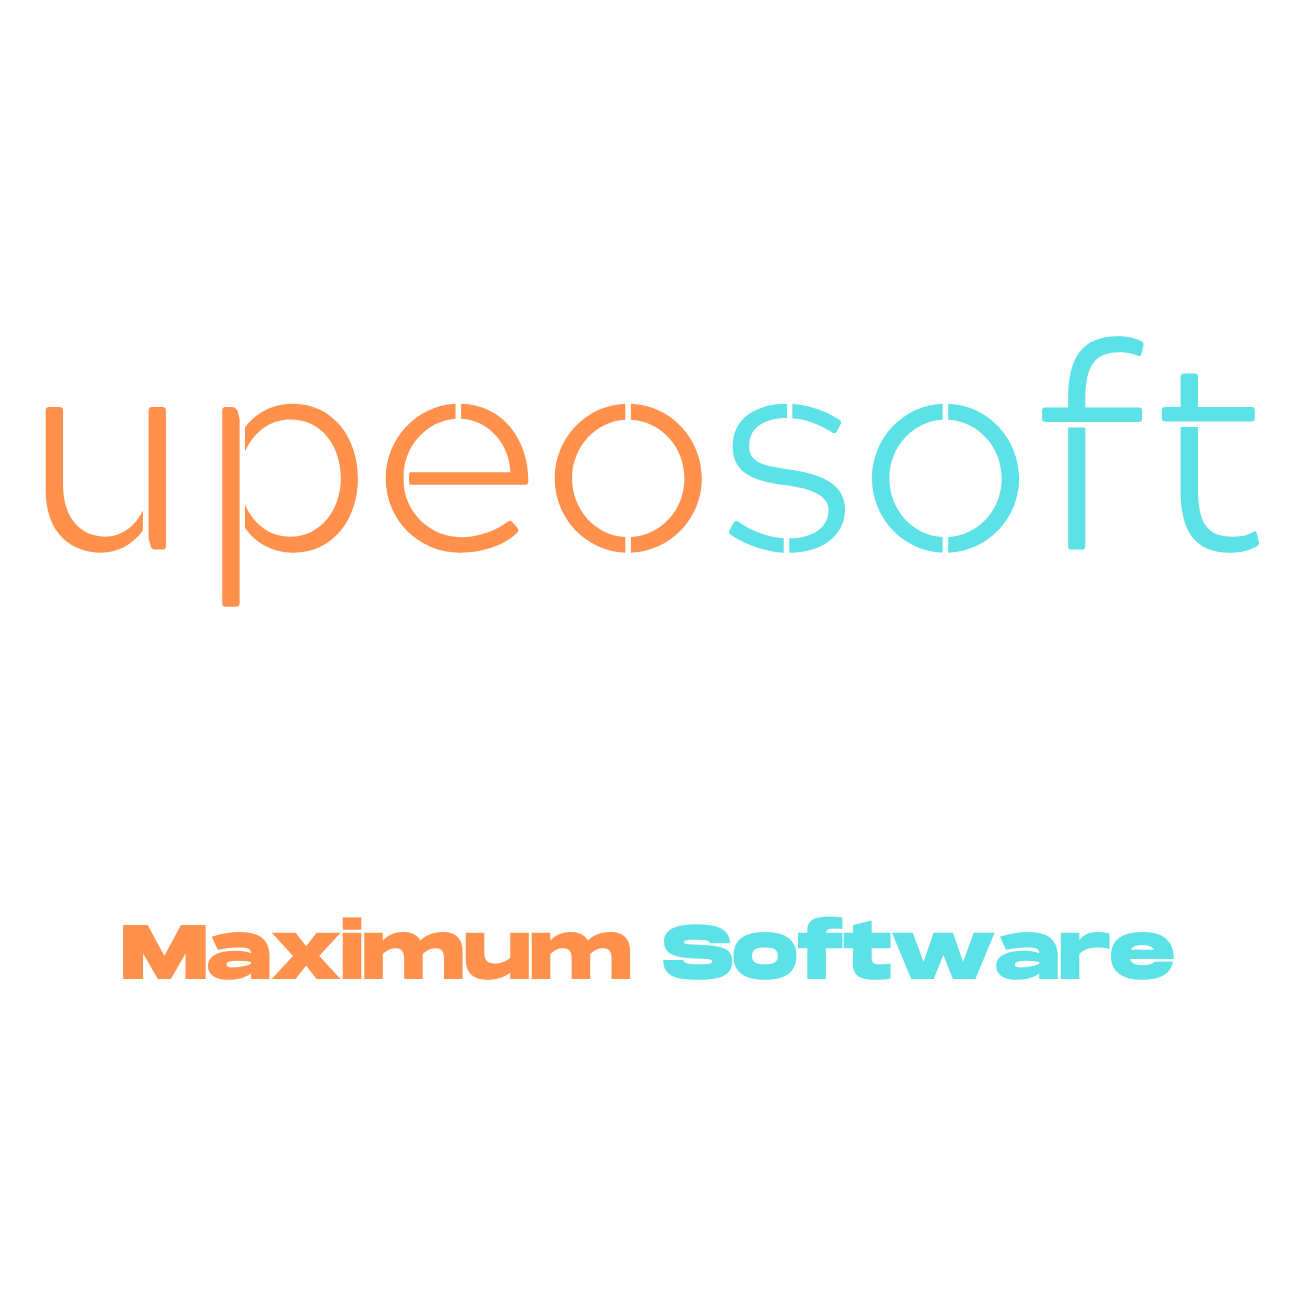 Upeosoft About image